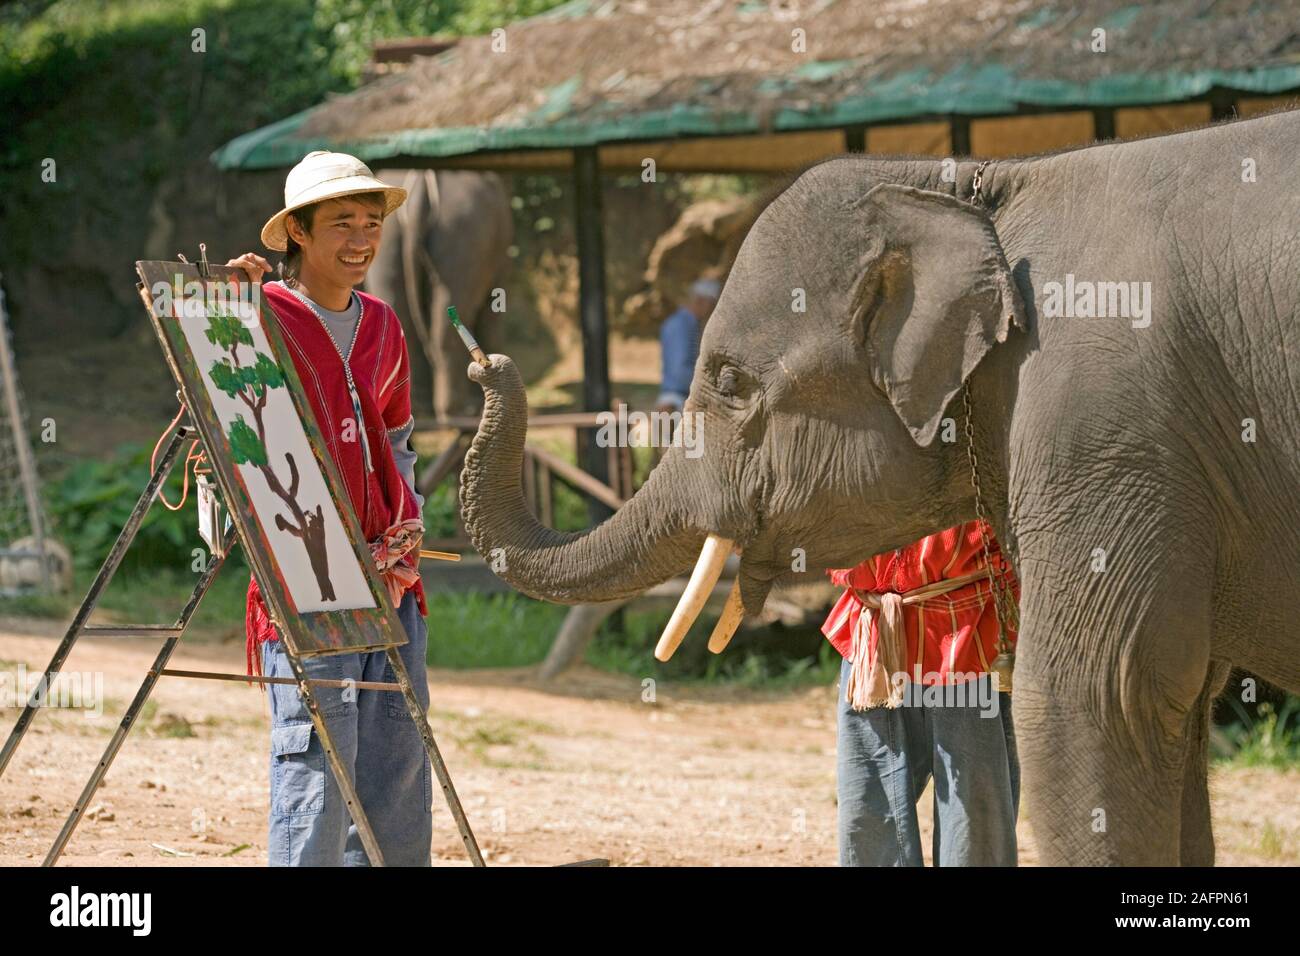 Éléphant d'Asie (Elephas maximus), formés pour peindre des tableaux, 'toiles' sur des chevalets. Maesa Elephant Camp, Chiang Mai, Thaïlande. Banque D'Images